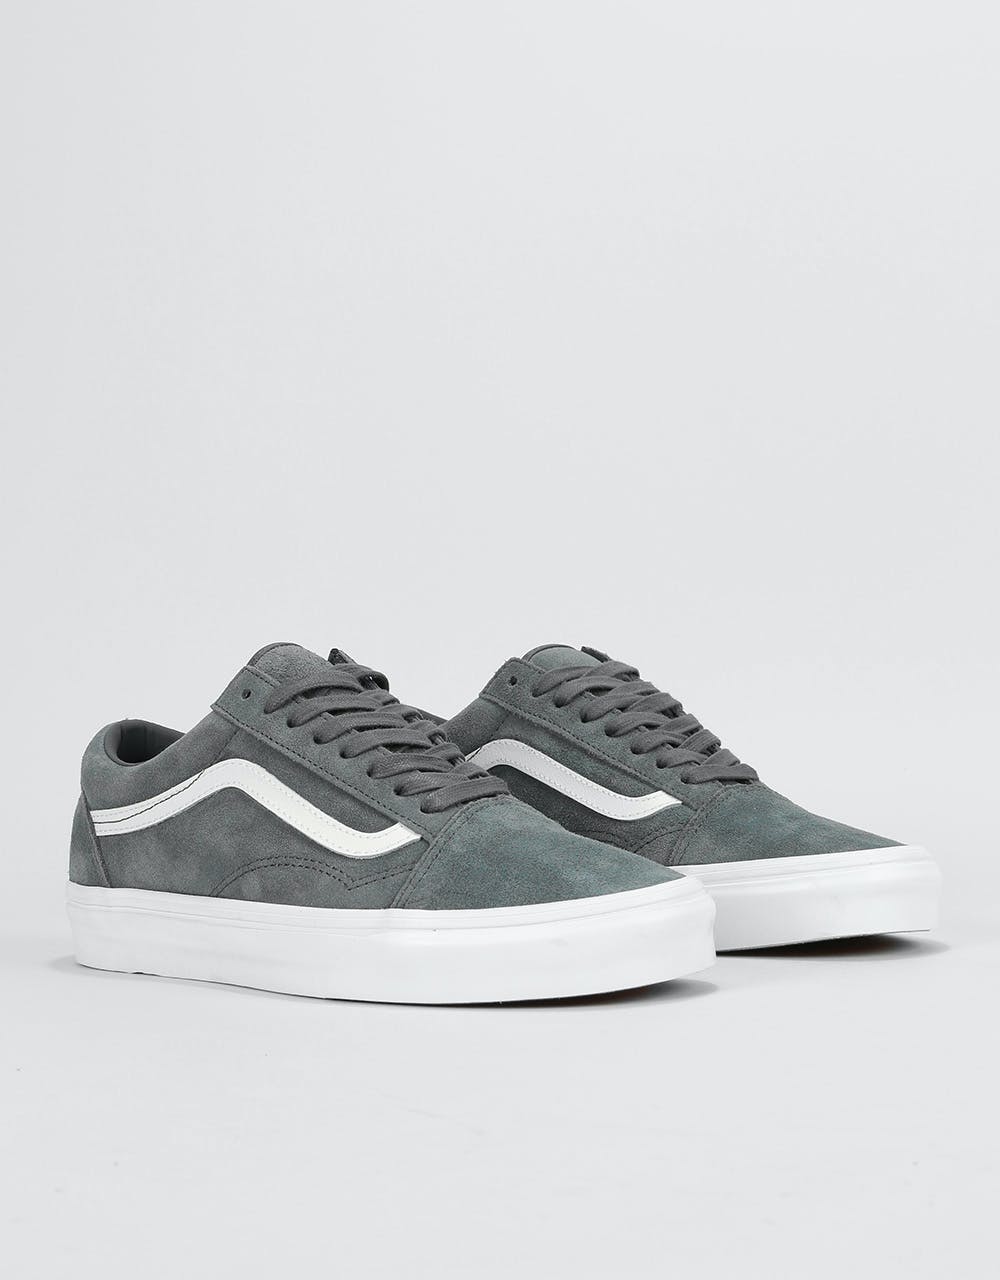 Vans Old Skool Skate Shoes - (Soft Suede) Ebony/True White